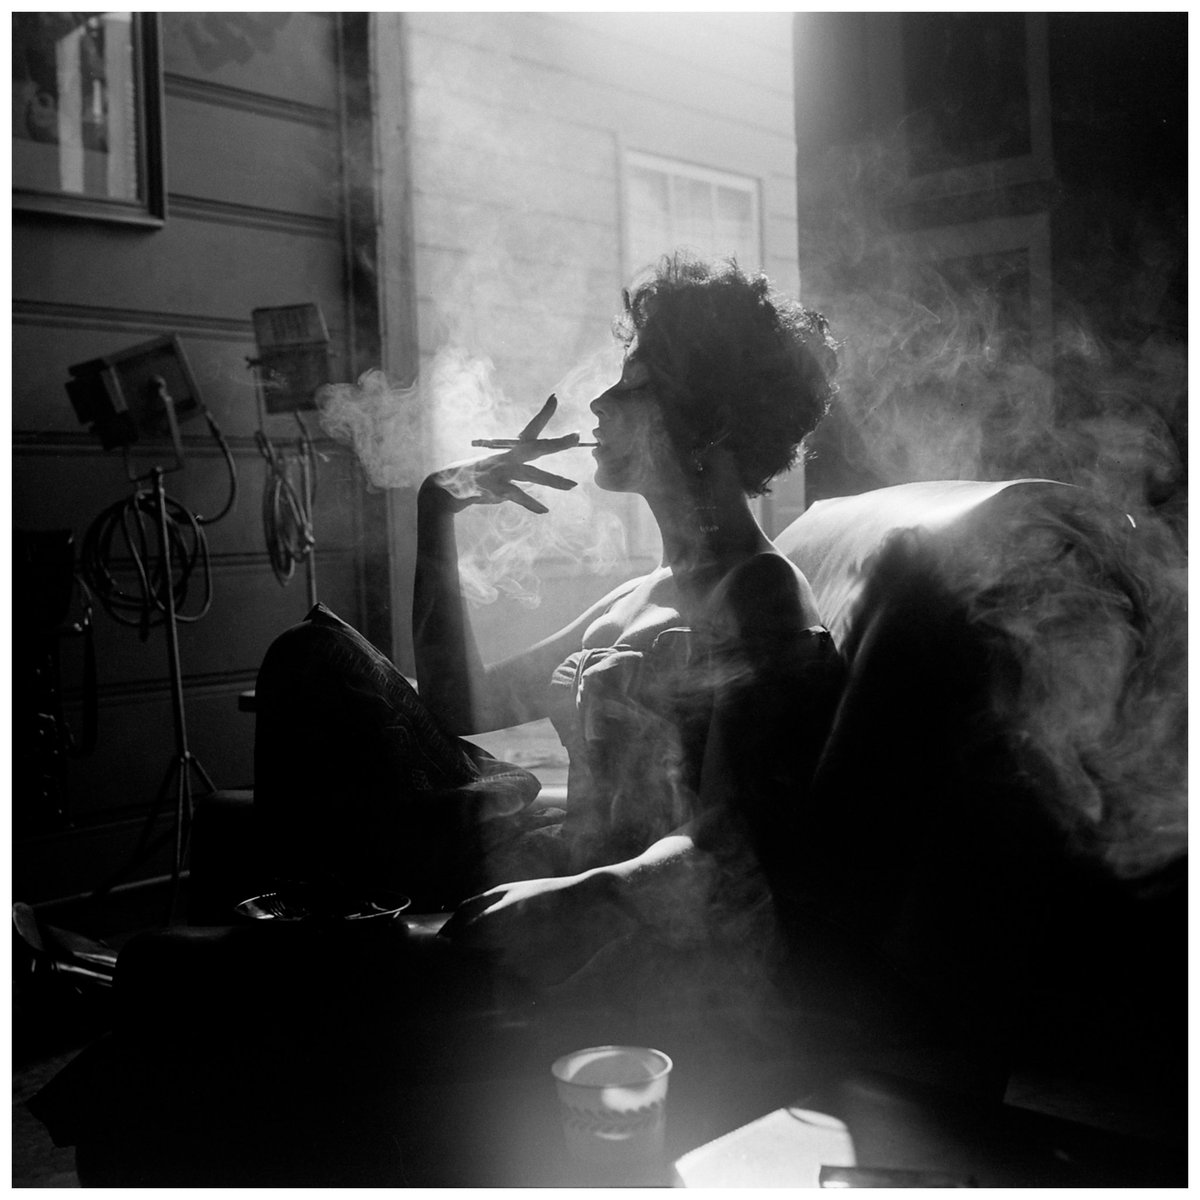 RT @perikznc: Rita Moreno
1954
By Loomis Dean https://t.co/w8Dw7PFxGt